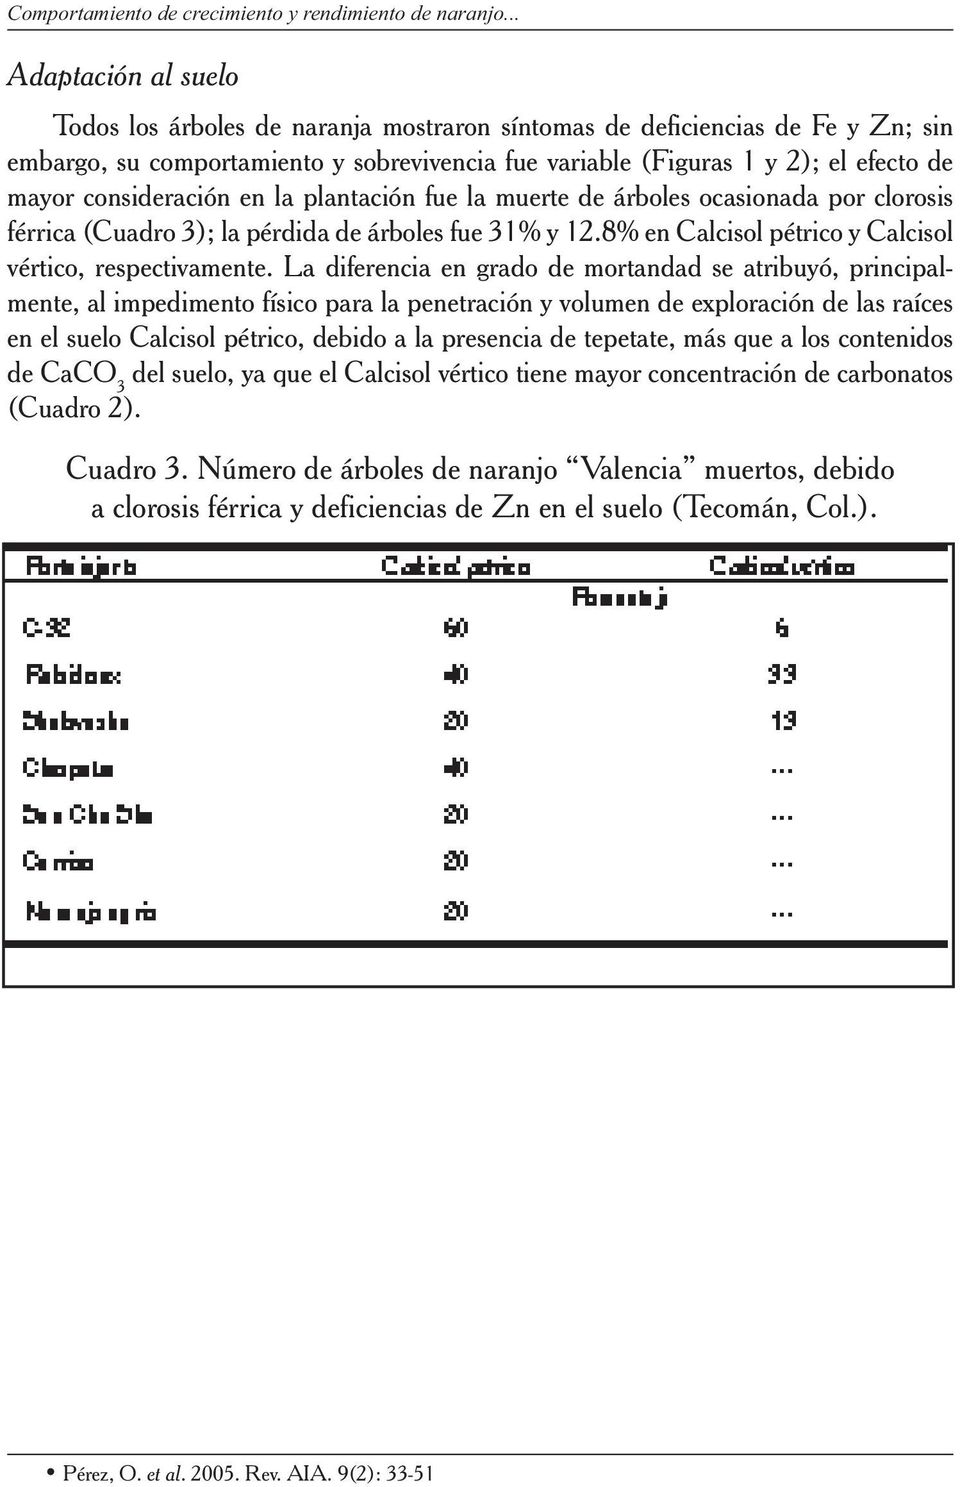 consideración en la plantación fue la muerte de árboles ocasionada por clorosis férrica (Cuadro 3); la pérdida de árboles fue 31% y 12.8% en Calcisol pétrico y Calcisol vértico, respectivamente.